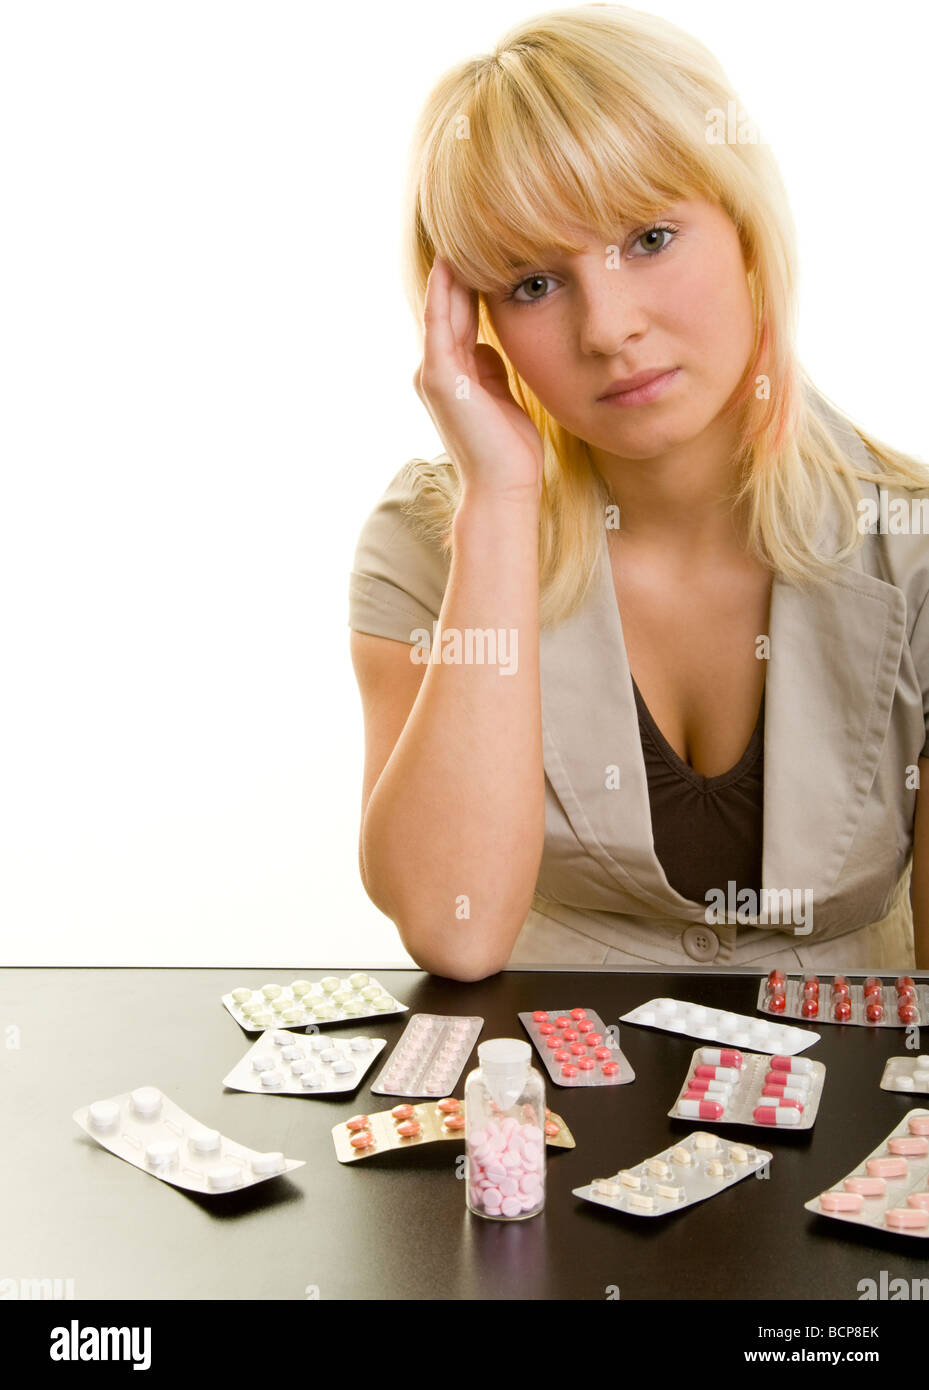 Junge Frau mit Kopfschmerzen sitzt an einem Tisch mit vielen Arzneimitteln Stock Photo